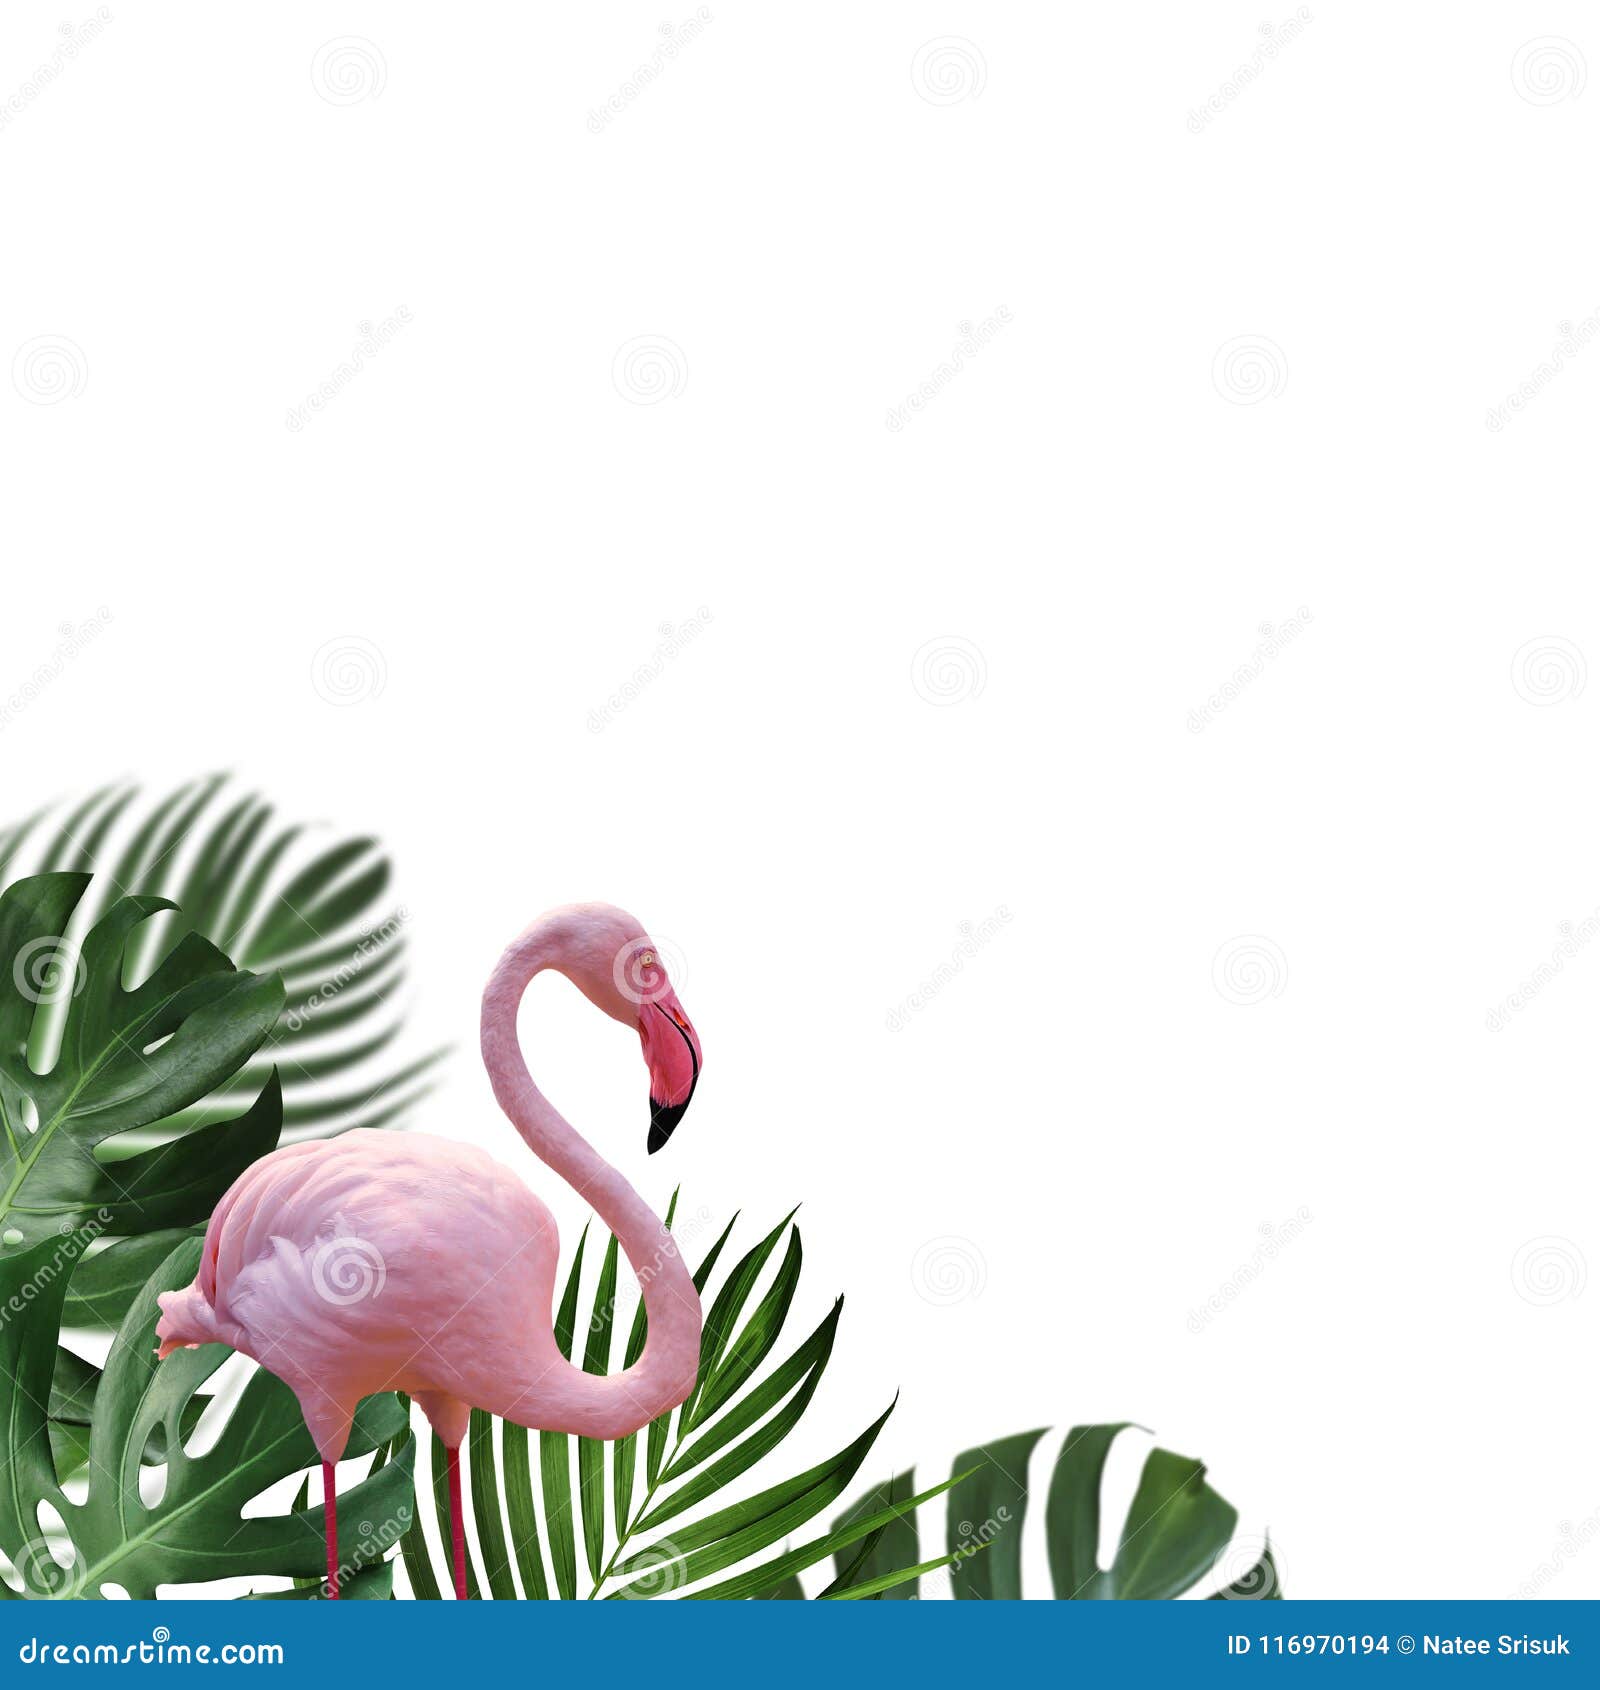 Details about   Florida Flamingo Palm Trees Souvenir Blank Vintage 